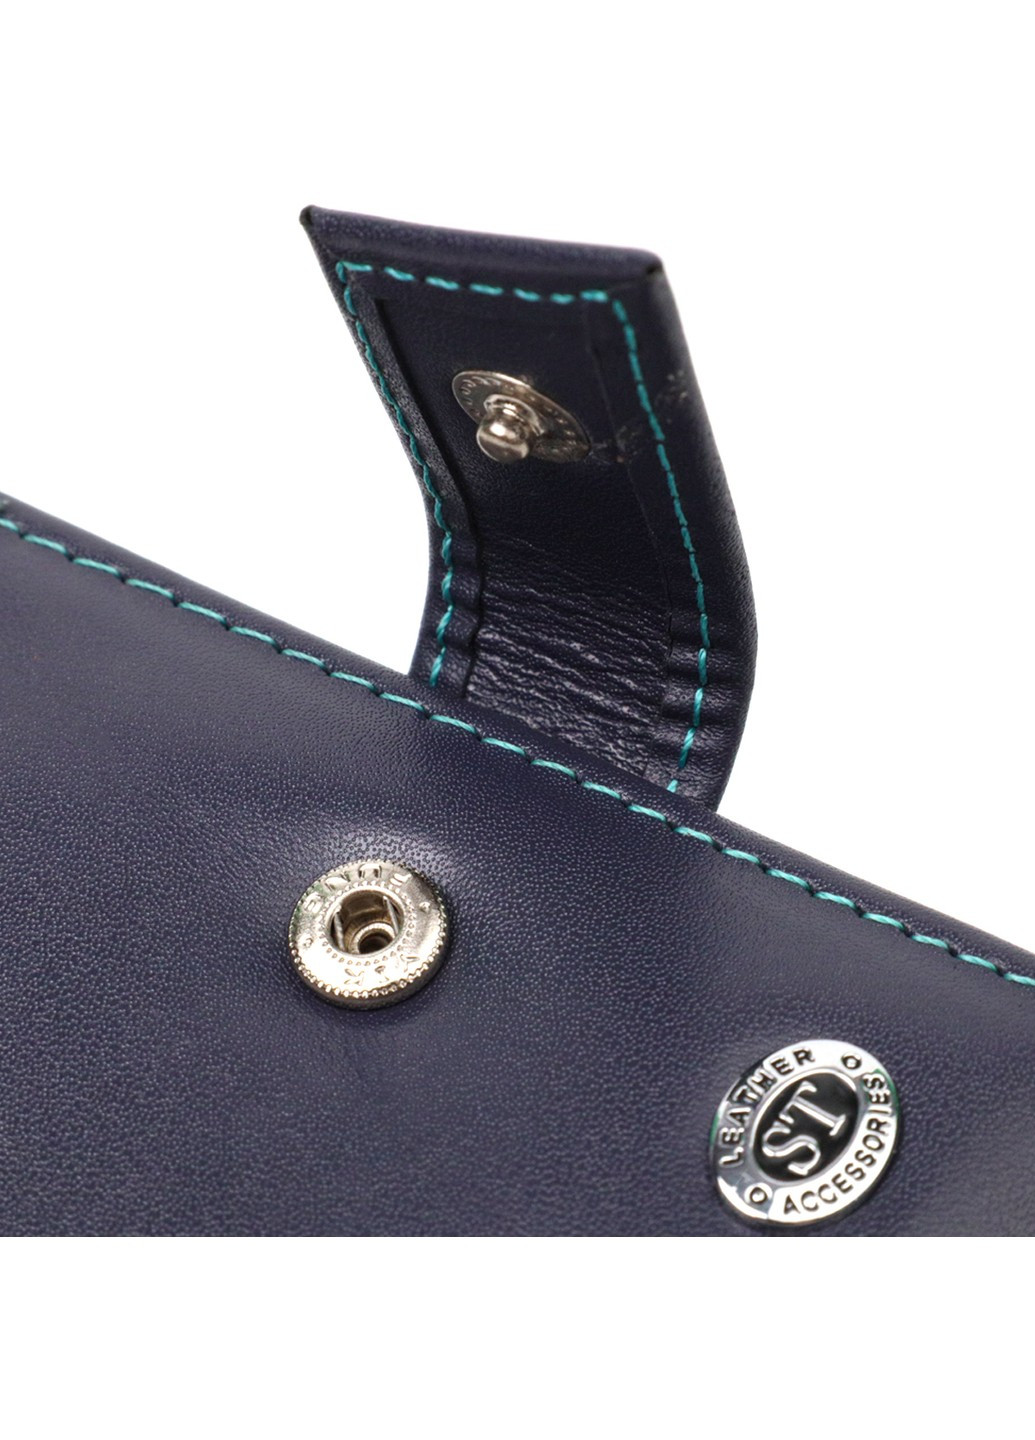 Компактный женский кошелек из натуральной кожи 19425 Синий st leather (267927756)